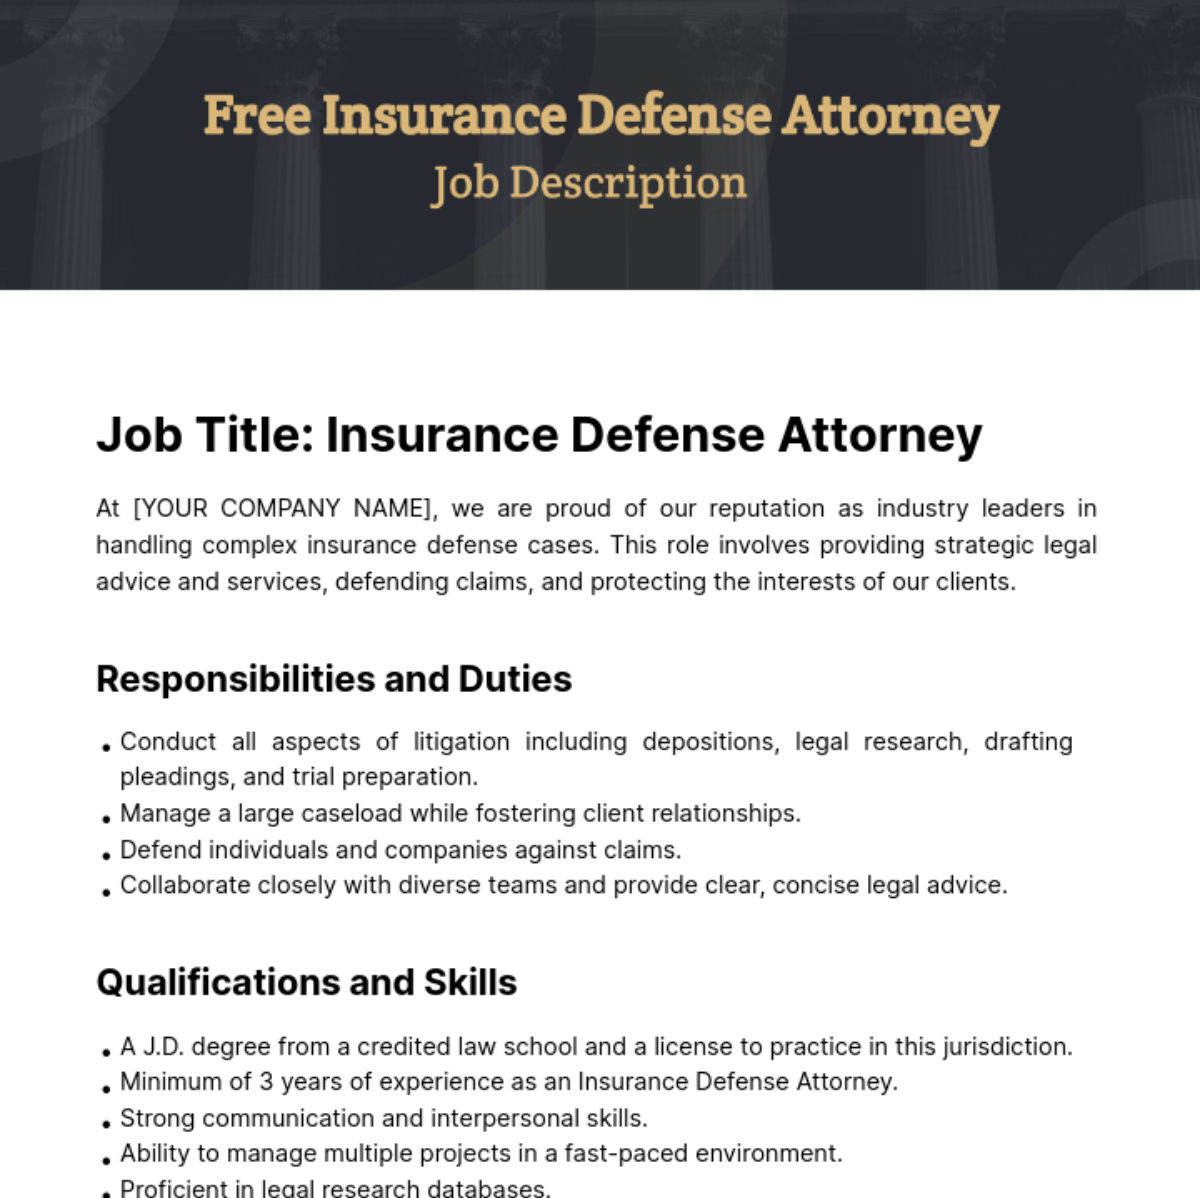 Free Insurance Defense Attorney Job Description Template